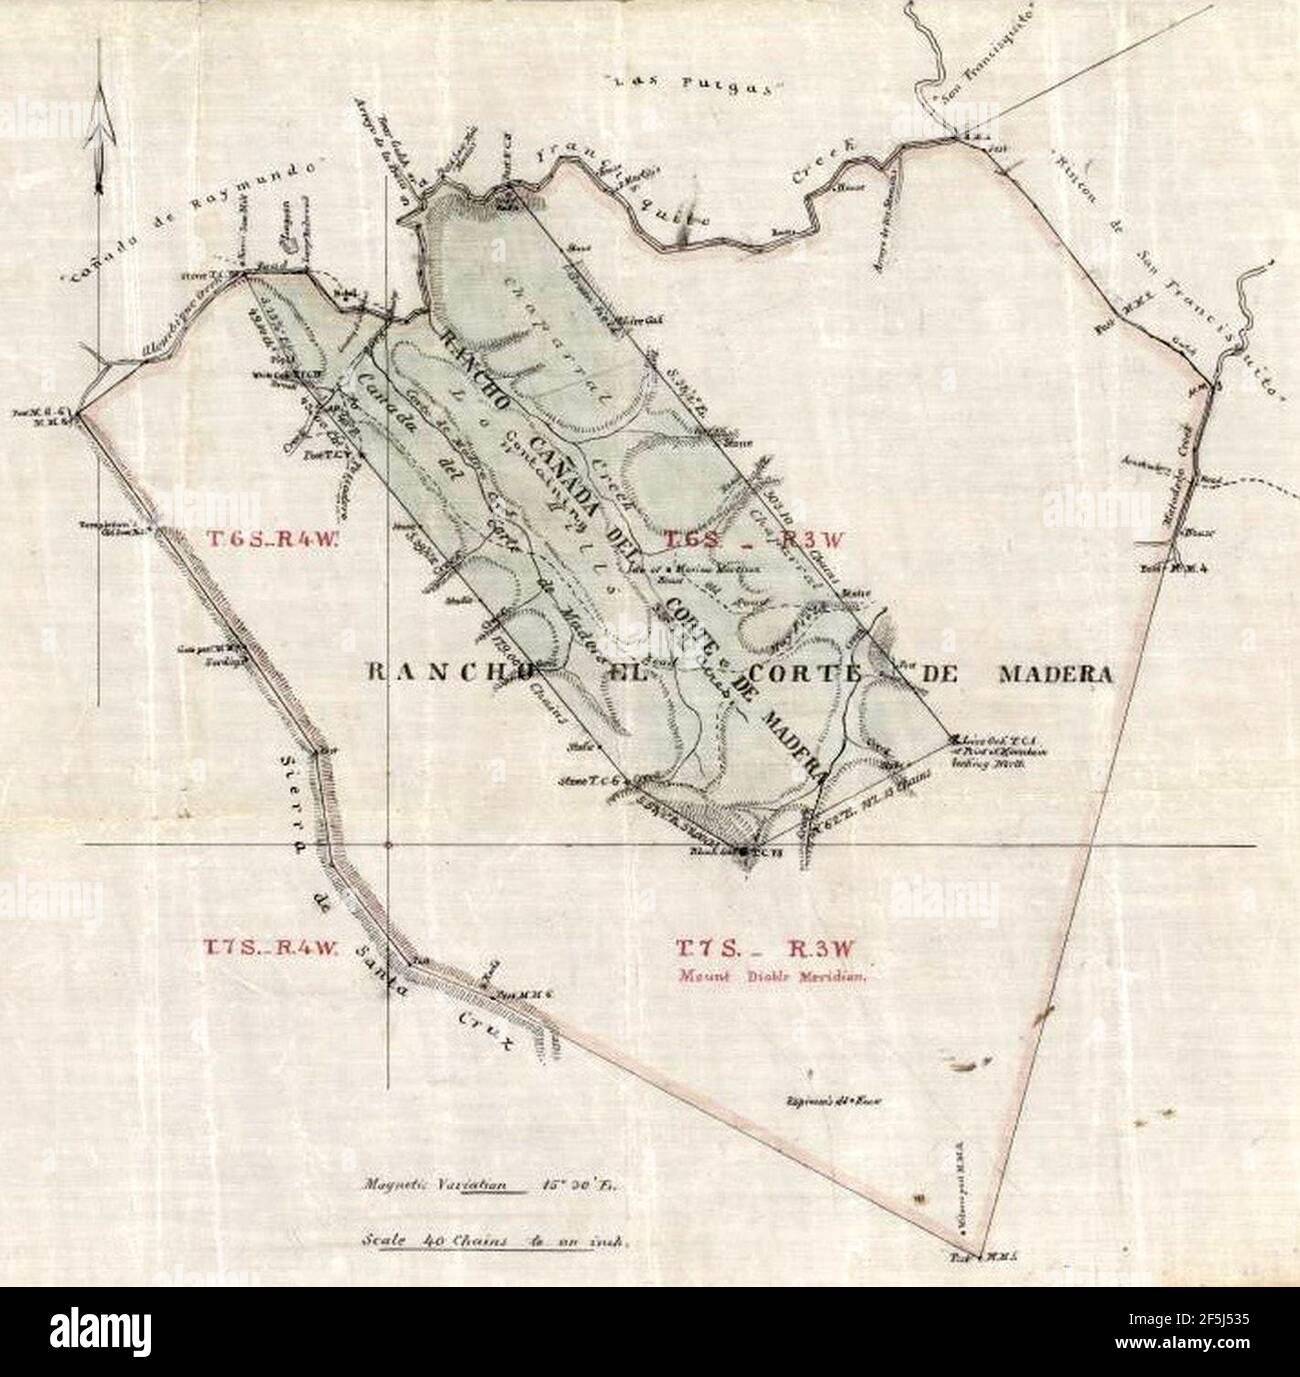 Rancho Cañada del Corte de Madera map. Stock Photo